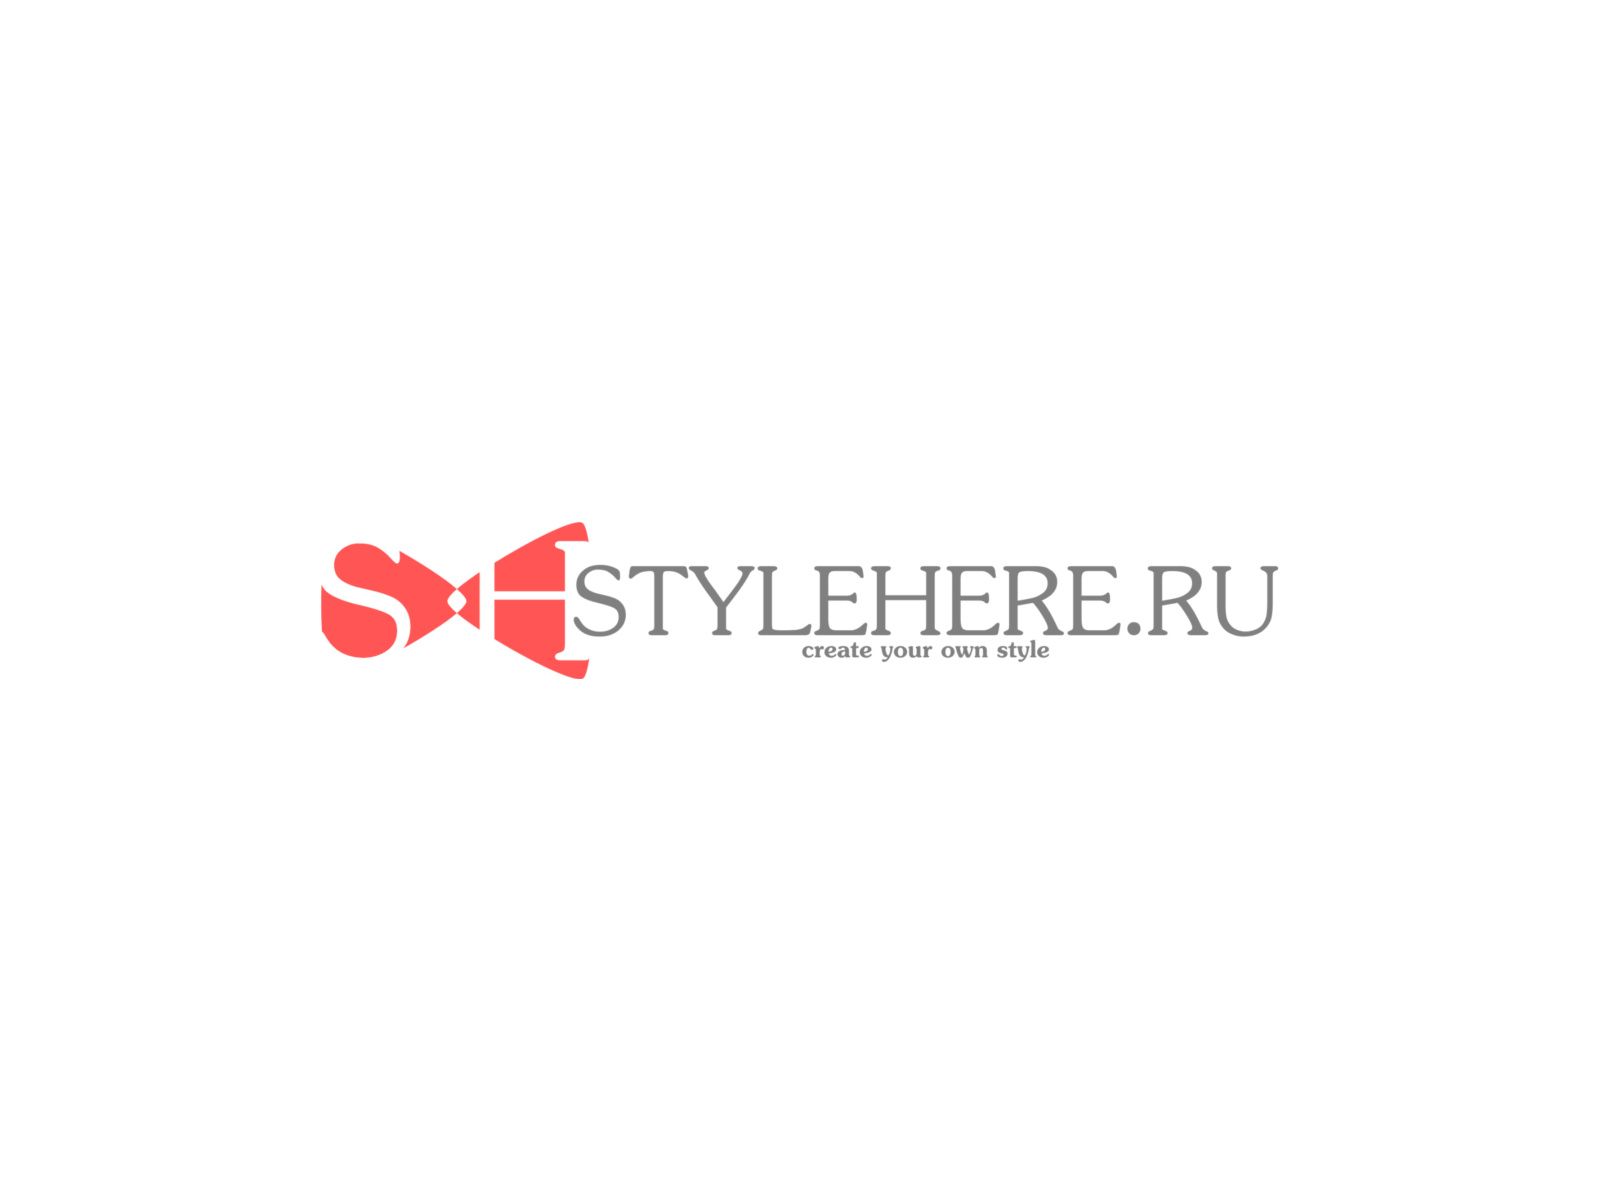 Логотип для интернет-магазина stylehere.ru - дизайнер sergius1000000